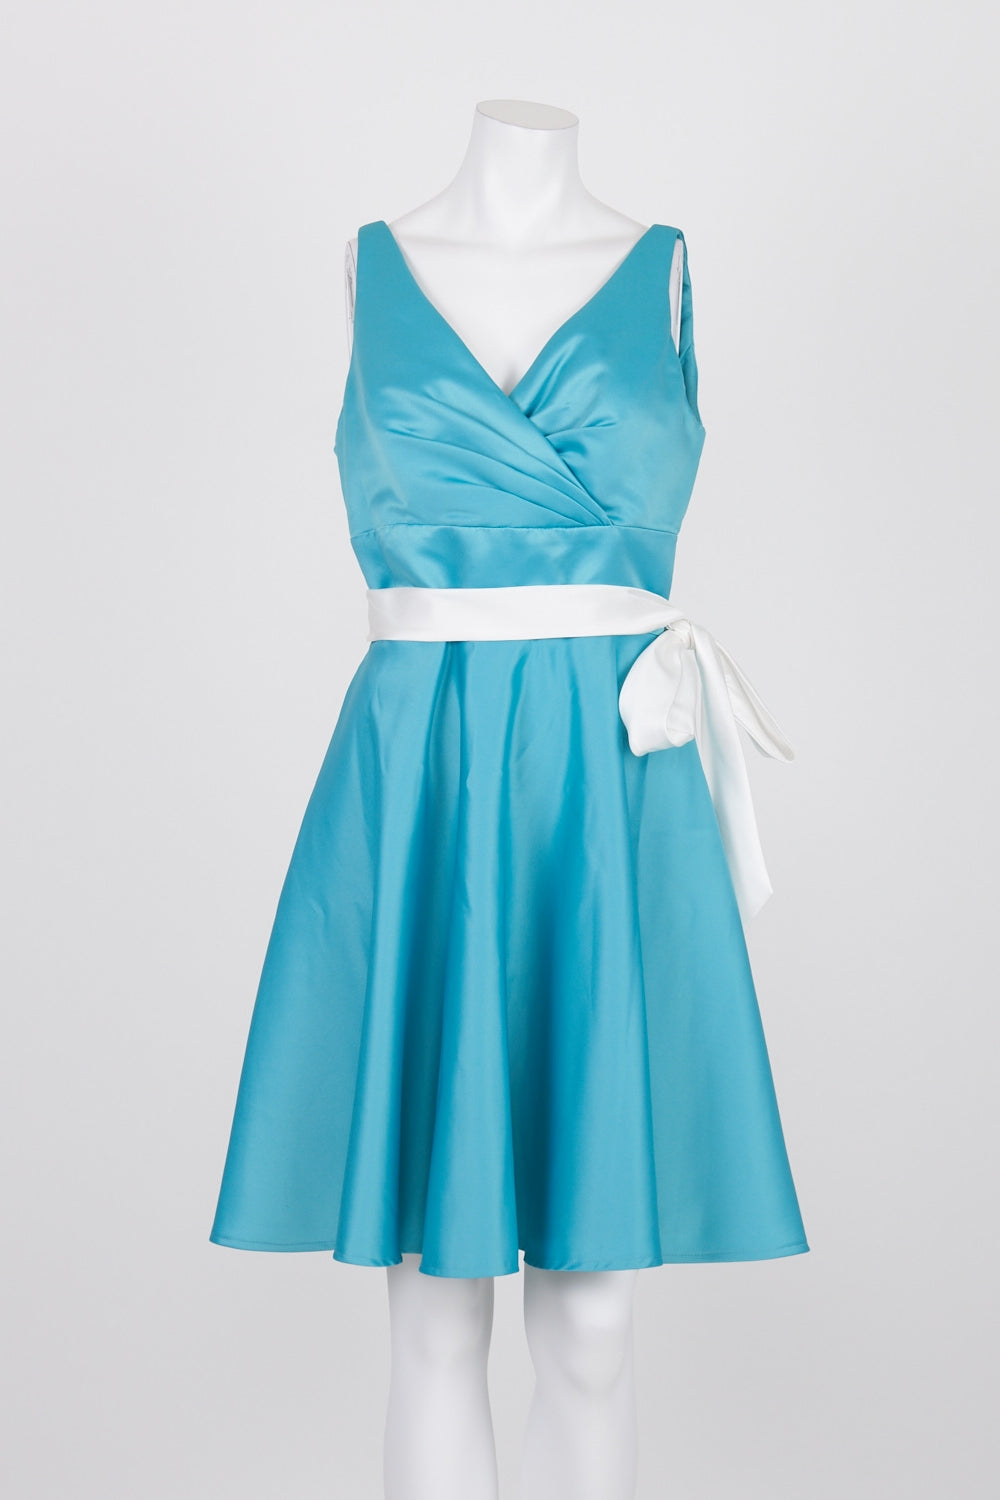 Mori Lee By Madeline Gardner Blue Sleeveless Dress 12 (with belt)